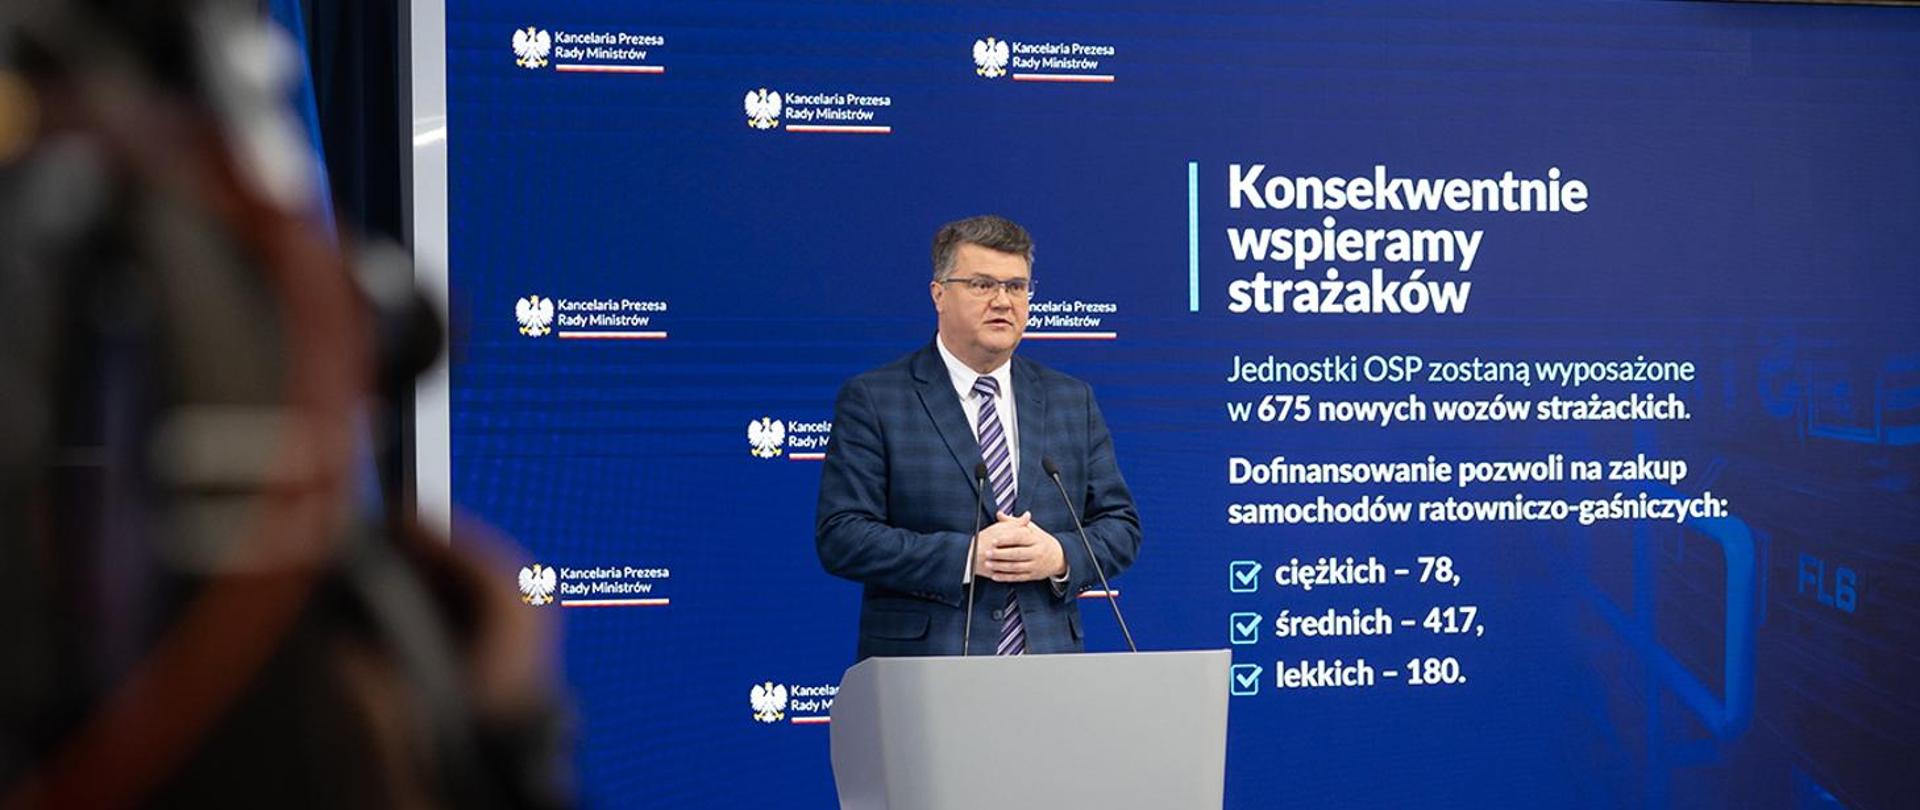 Na zdjęciu wiceminister Maciej Wąsik, który poinformował o zatwierdzeniu nowego zestawienia samochodów dla jednostek OSP 